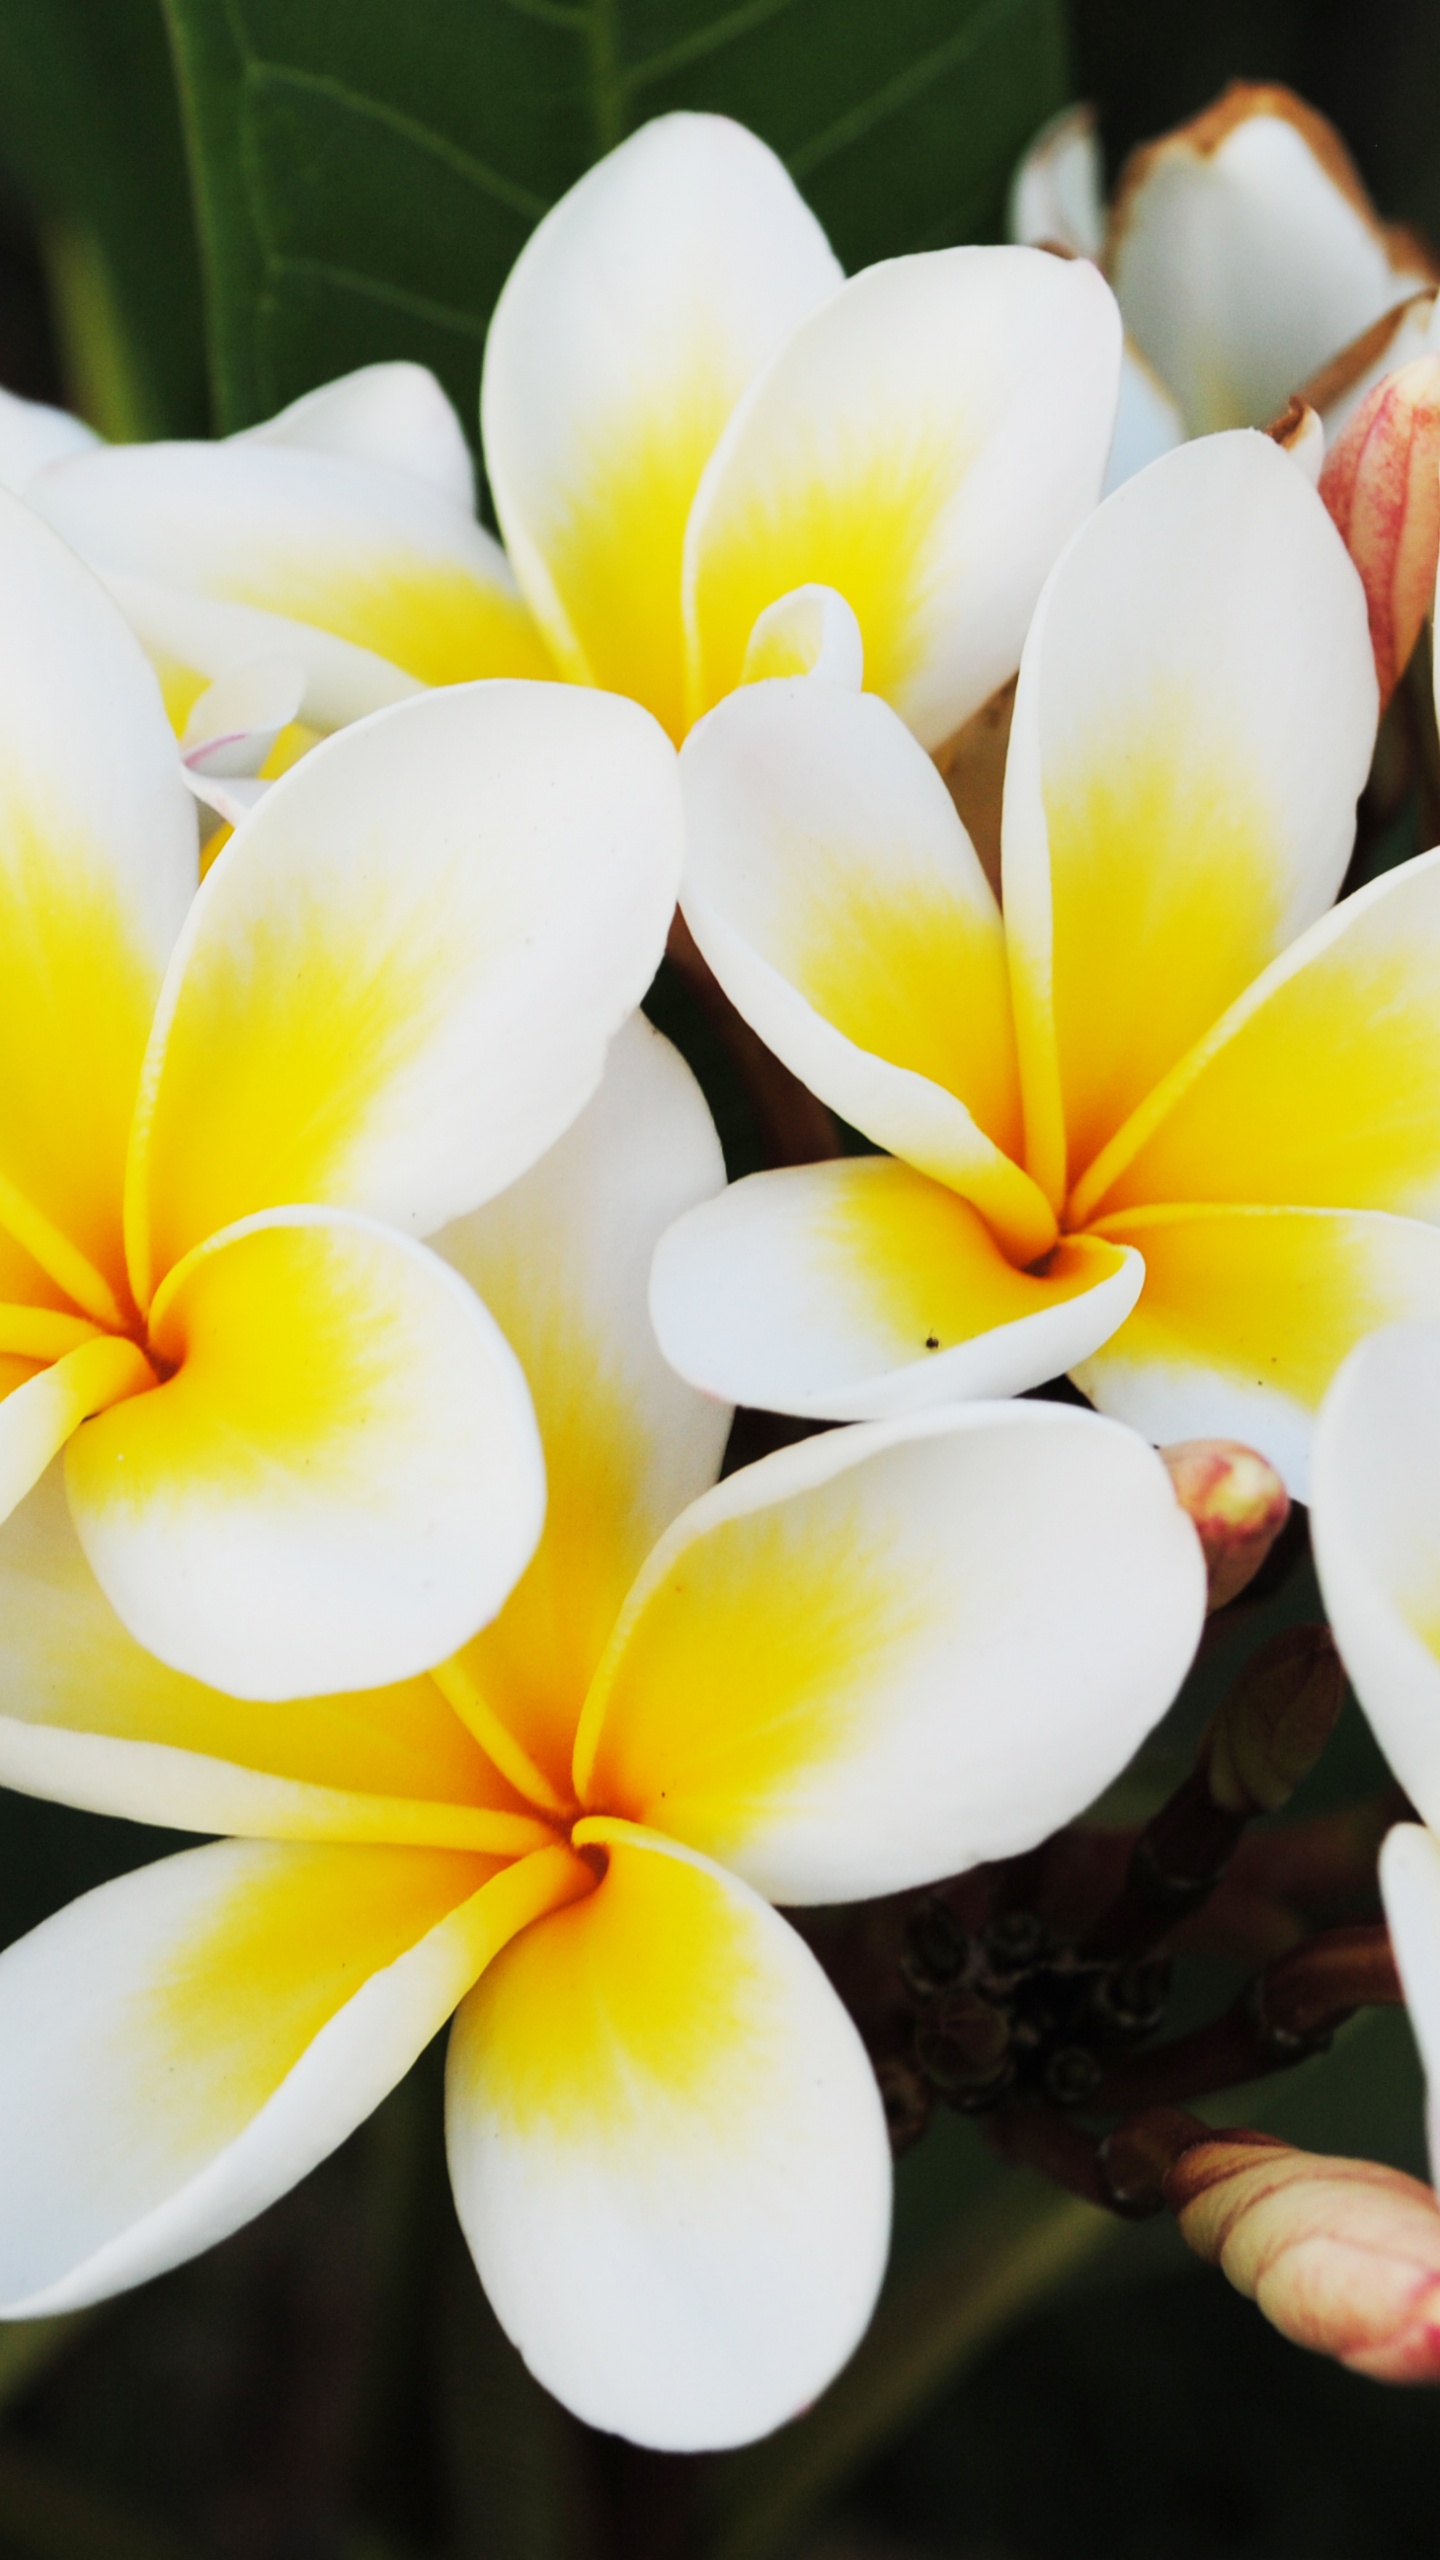 Flor Blanca y Amarilla en Fotografía de Cerca. Wallpaper in 1440x2560 Resolution